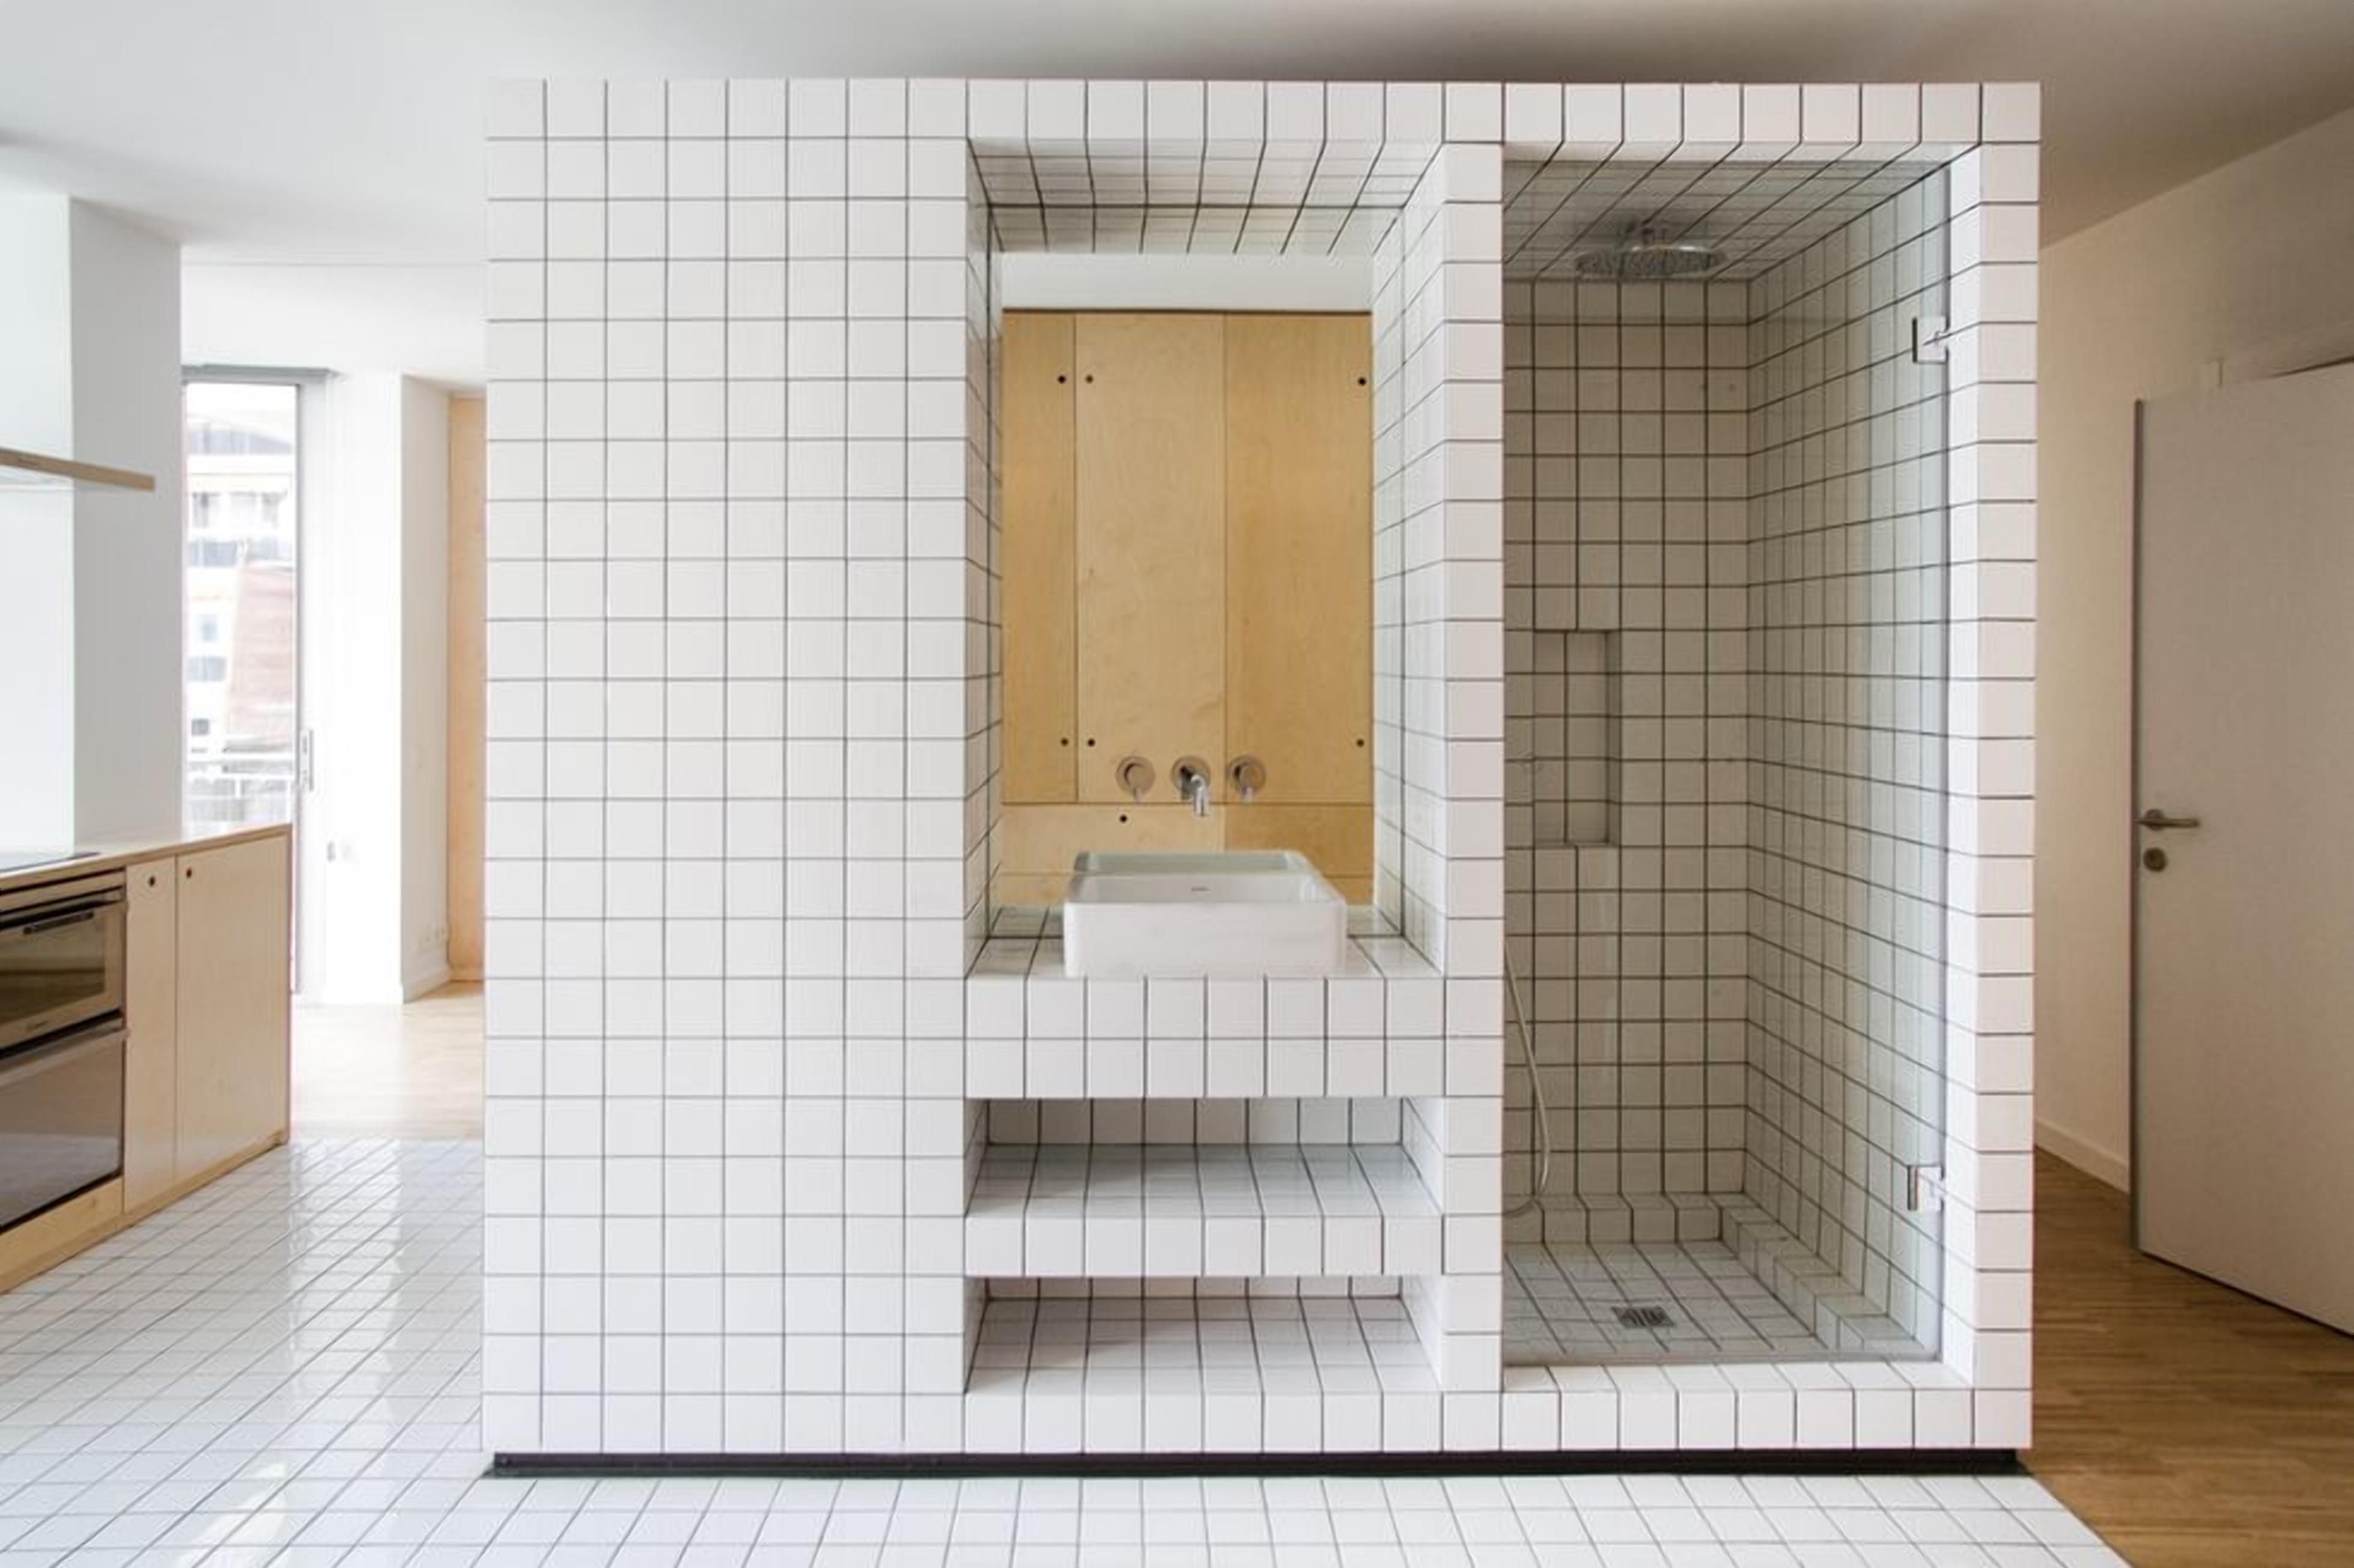 Дивовижне планування: як виглядає сучасна квартира з душовою кабіною посеред кухні - 21 октября 2021 - Дизайн 24